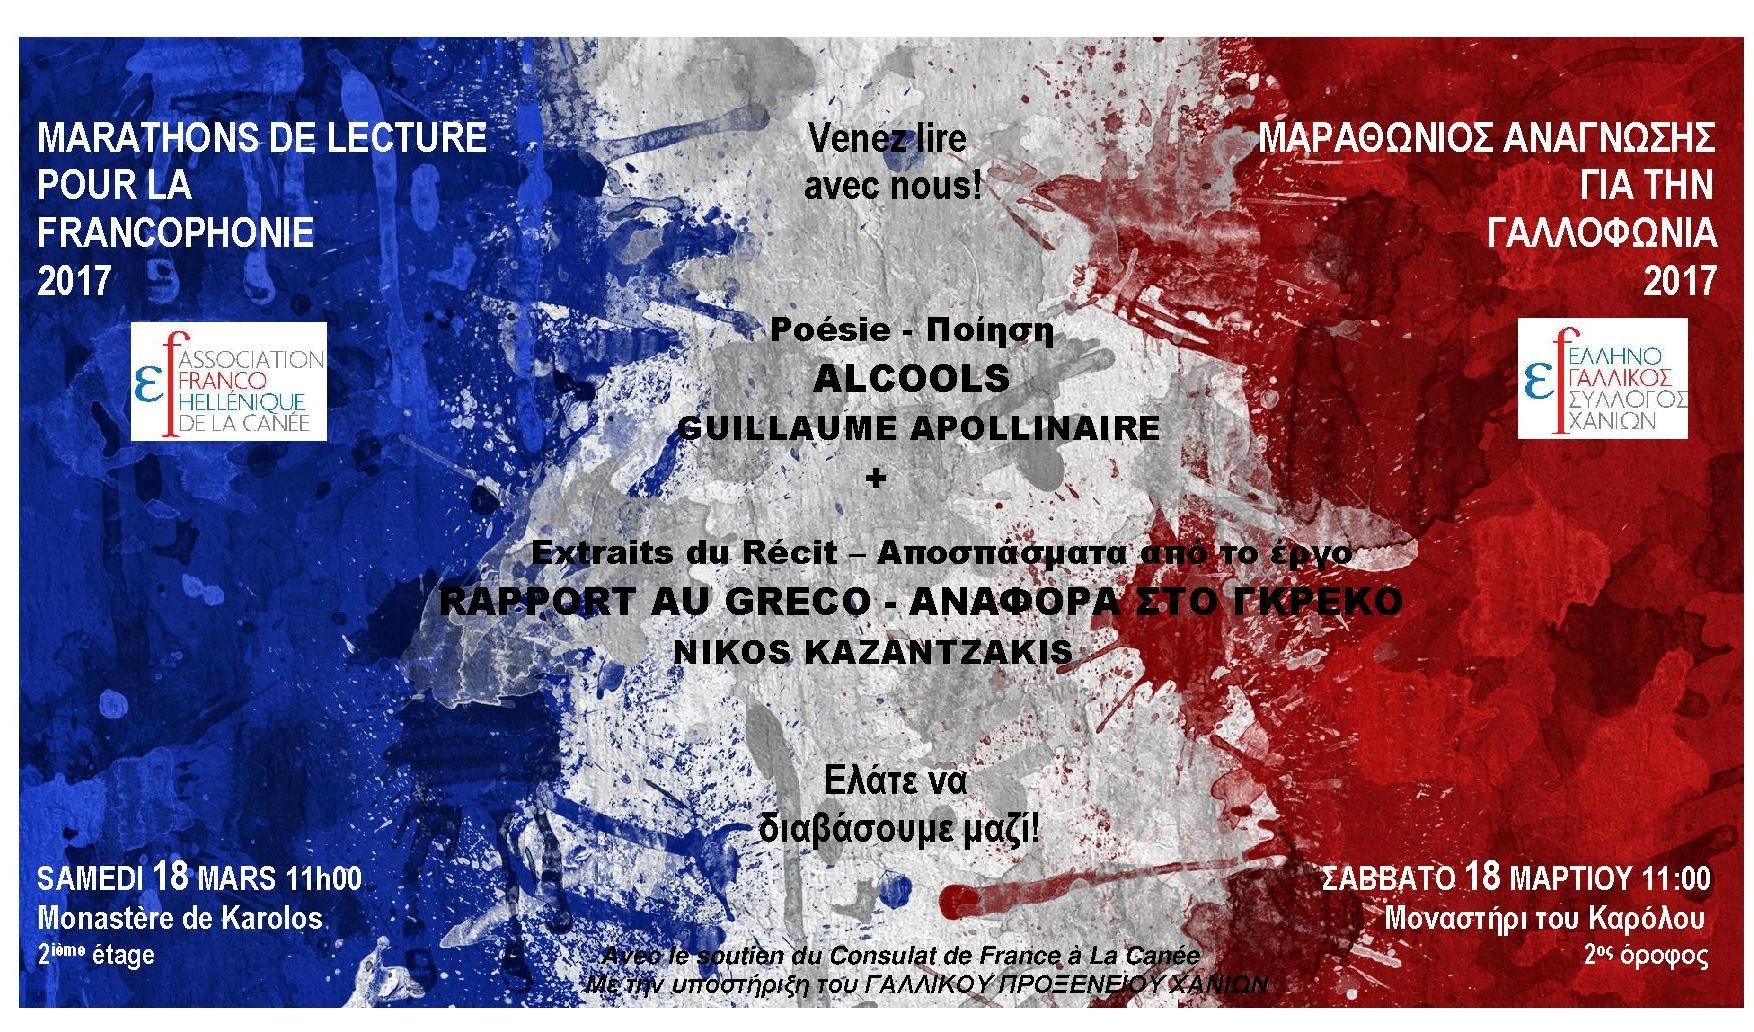 Με Απολλιναίρ &Καζαντζάκη γιορτάζει ο Ελληνο-Γαλλικός Χανίων τη γαλλοφωνία